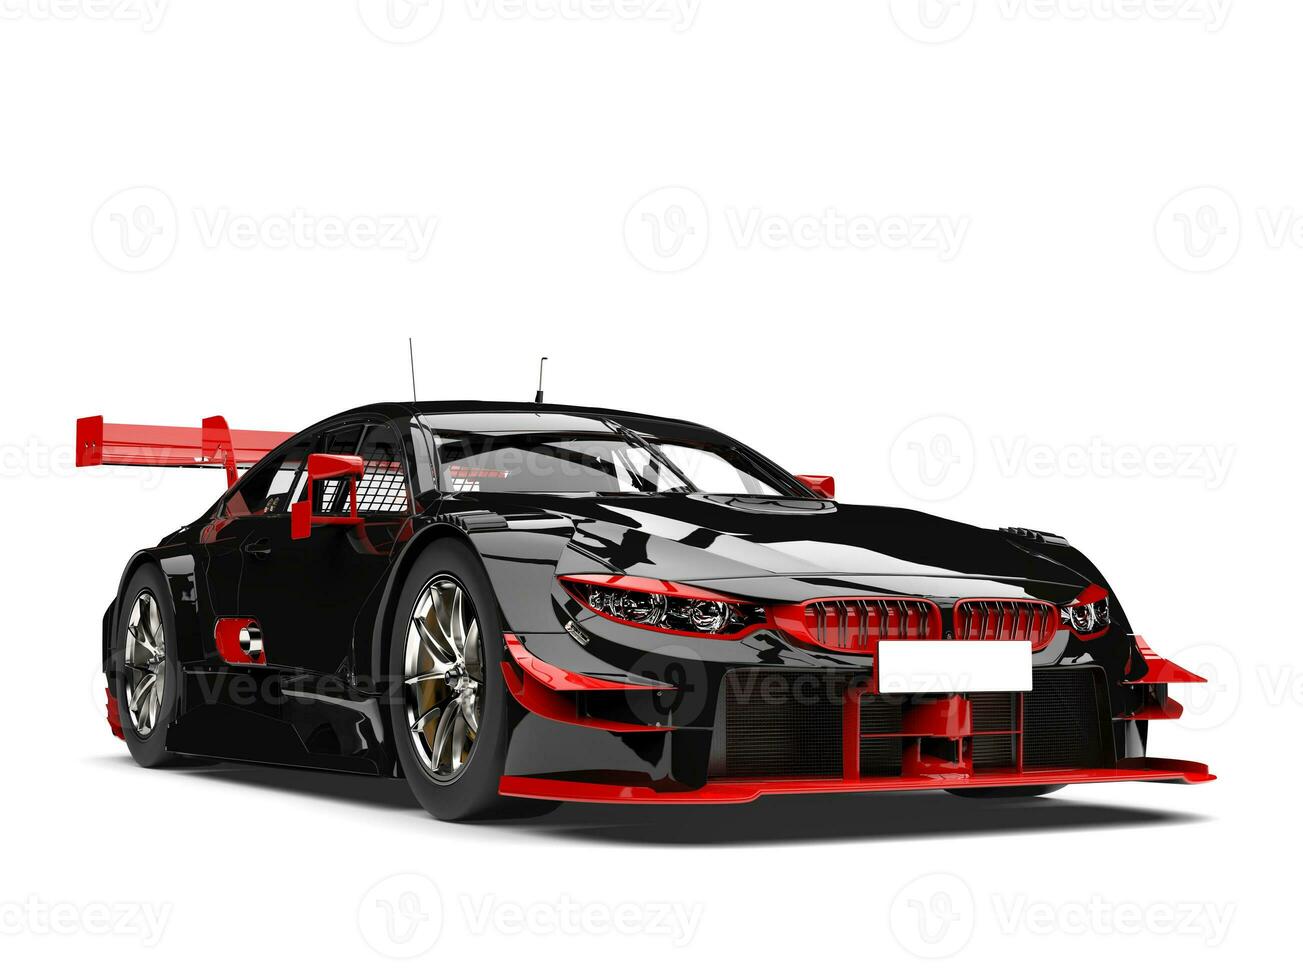 verbazingwekkend donker racing auto met rood details foto